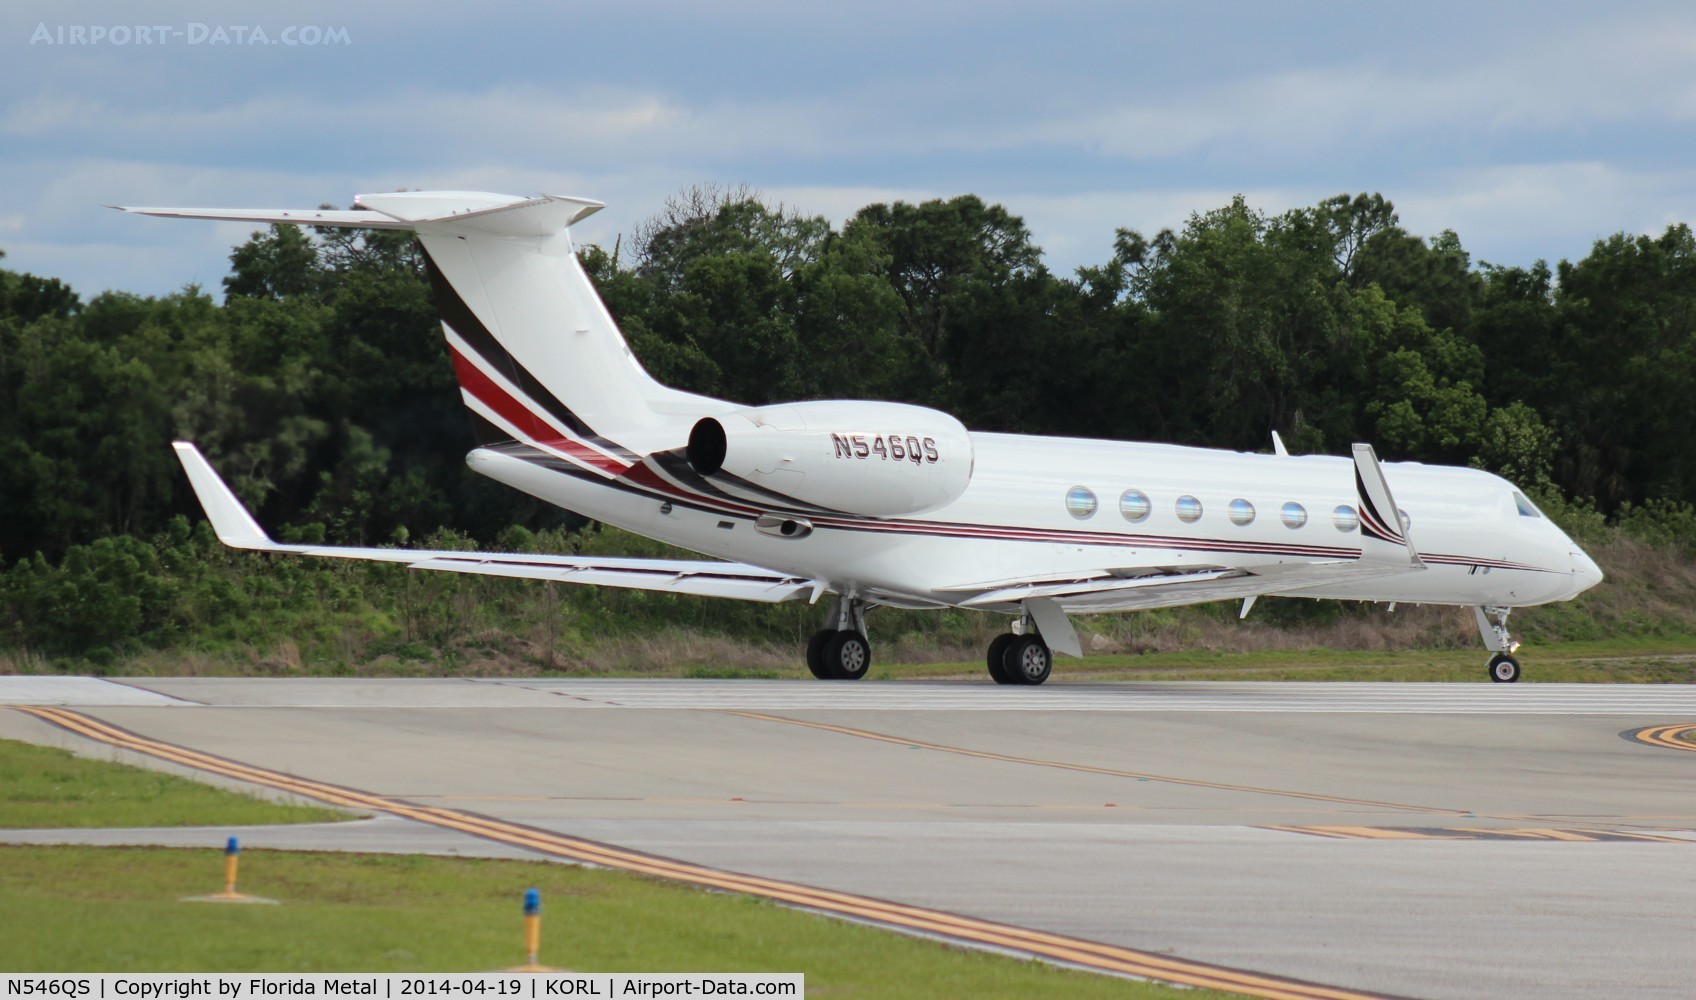 N546QS, 2008 Gulfstream Aerospace GV-SP (G550) C/N 5190, G550 zx